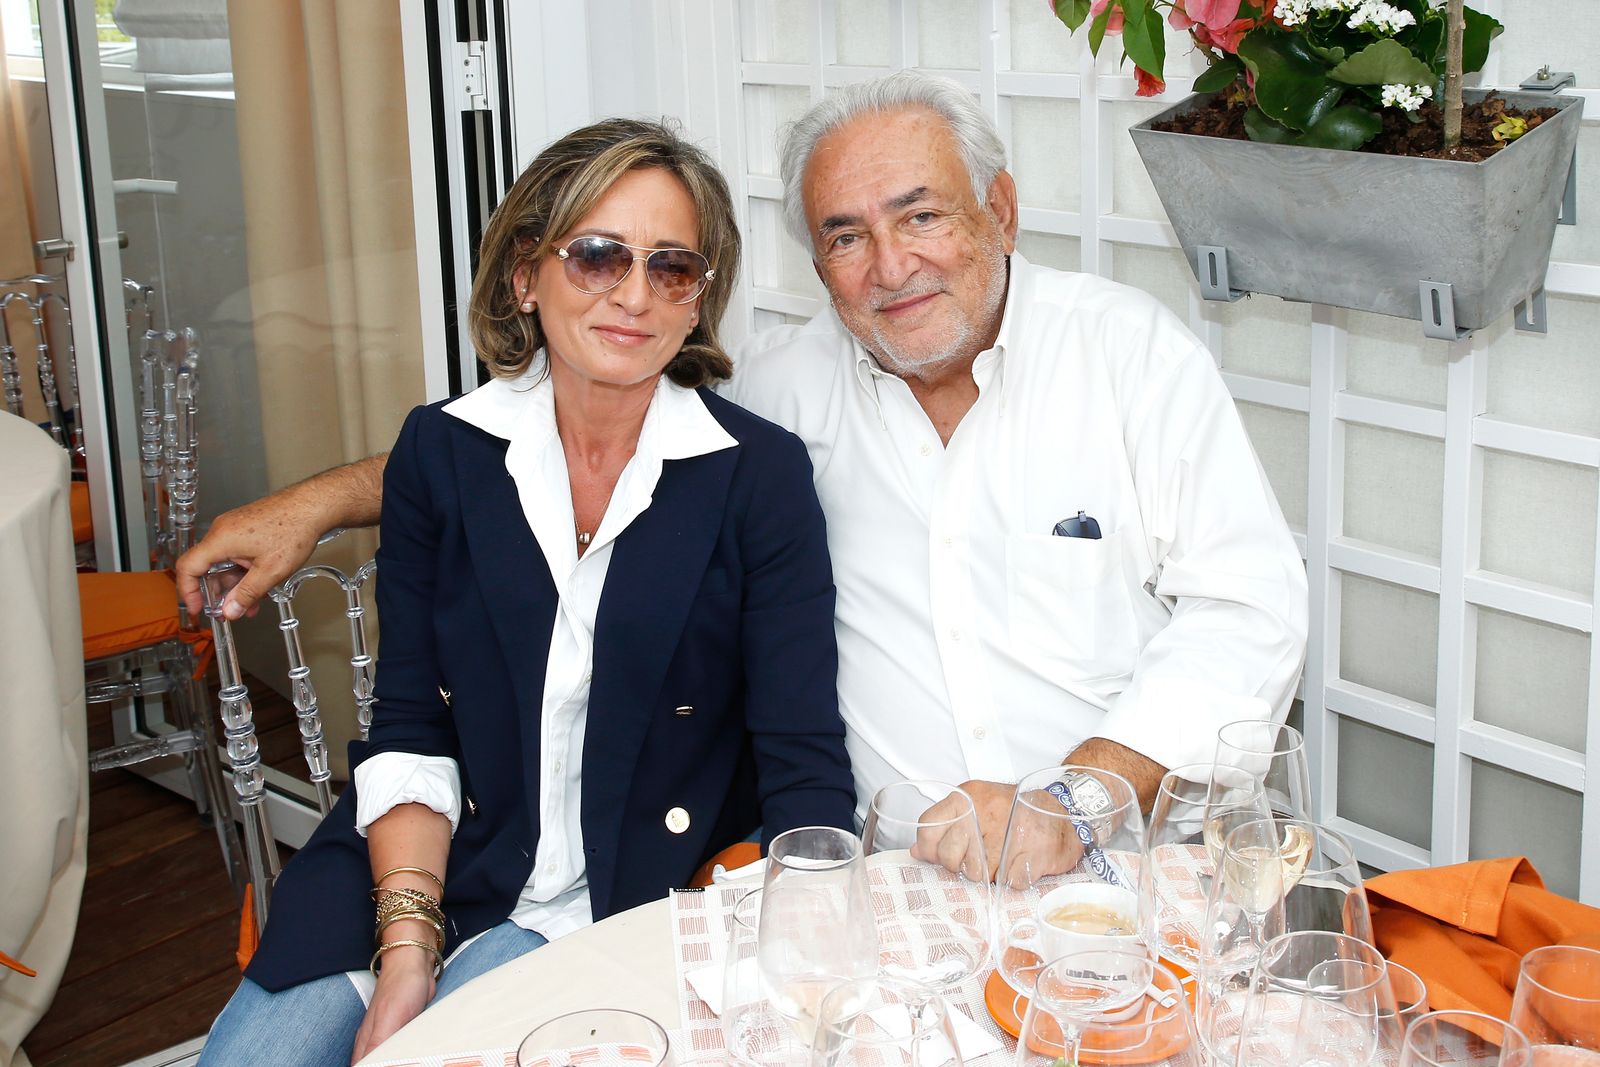  Dominique Strauss-Kahn et Myriam L'Aouffir à Roland Garros le 30 mai 2017 à Paris, France.  | Photo : Getty Images